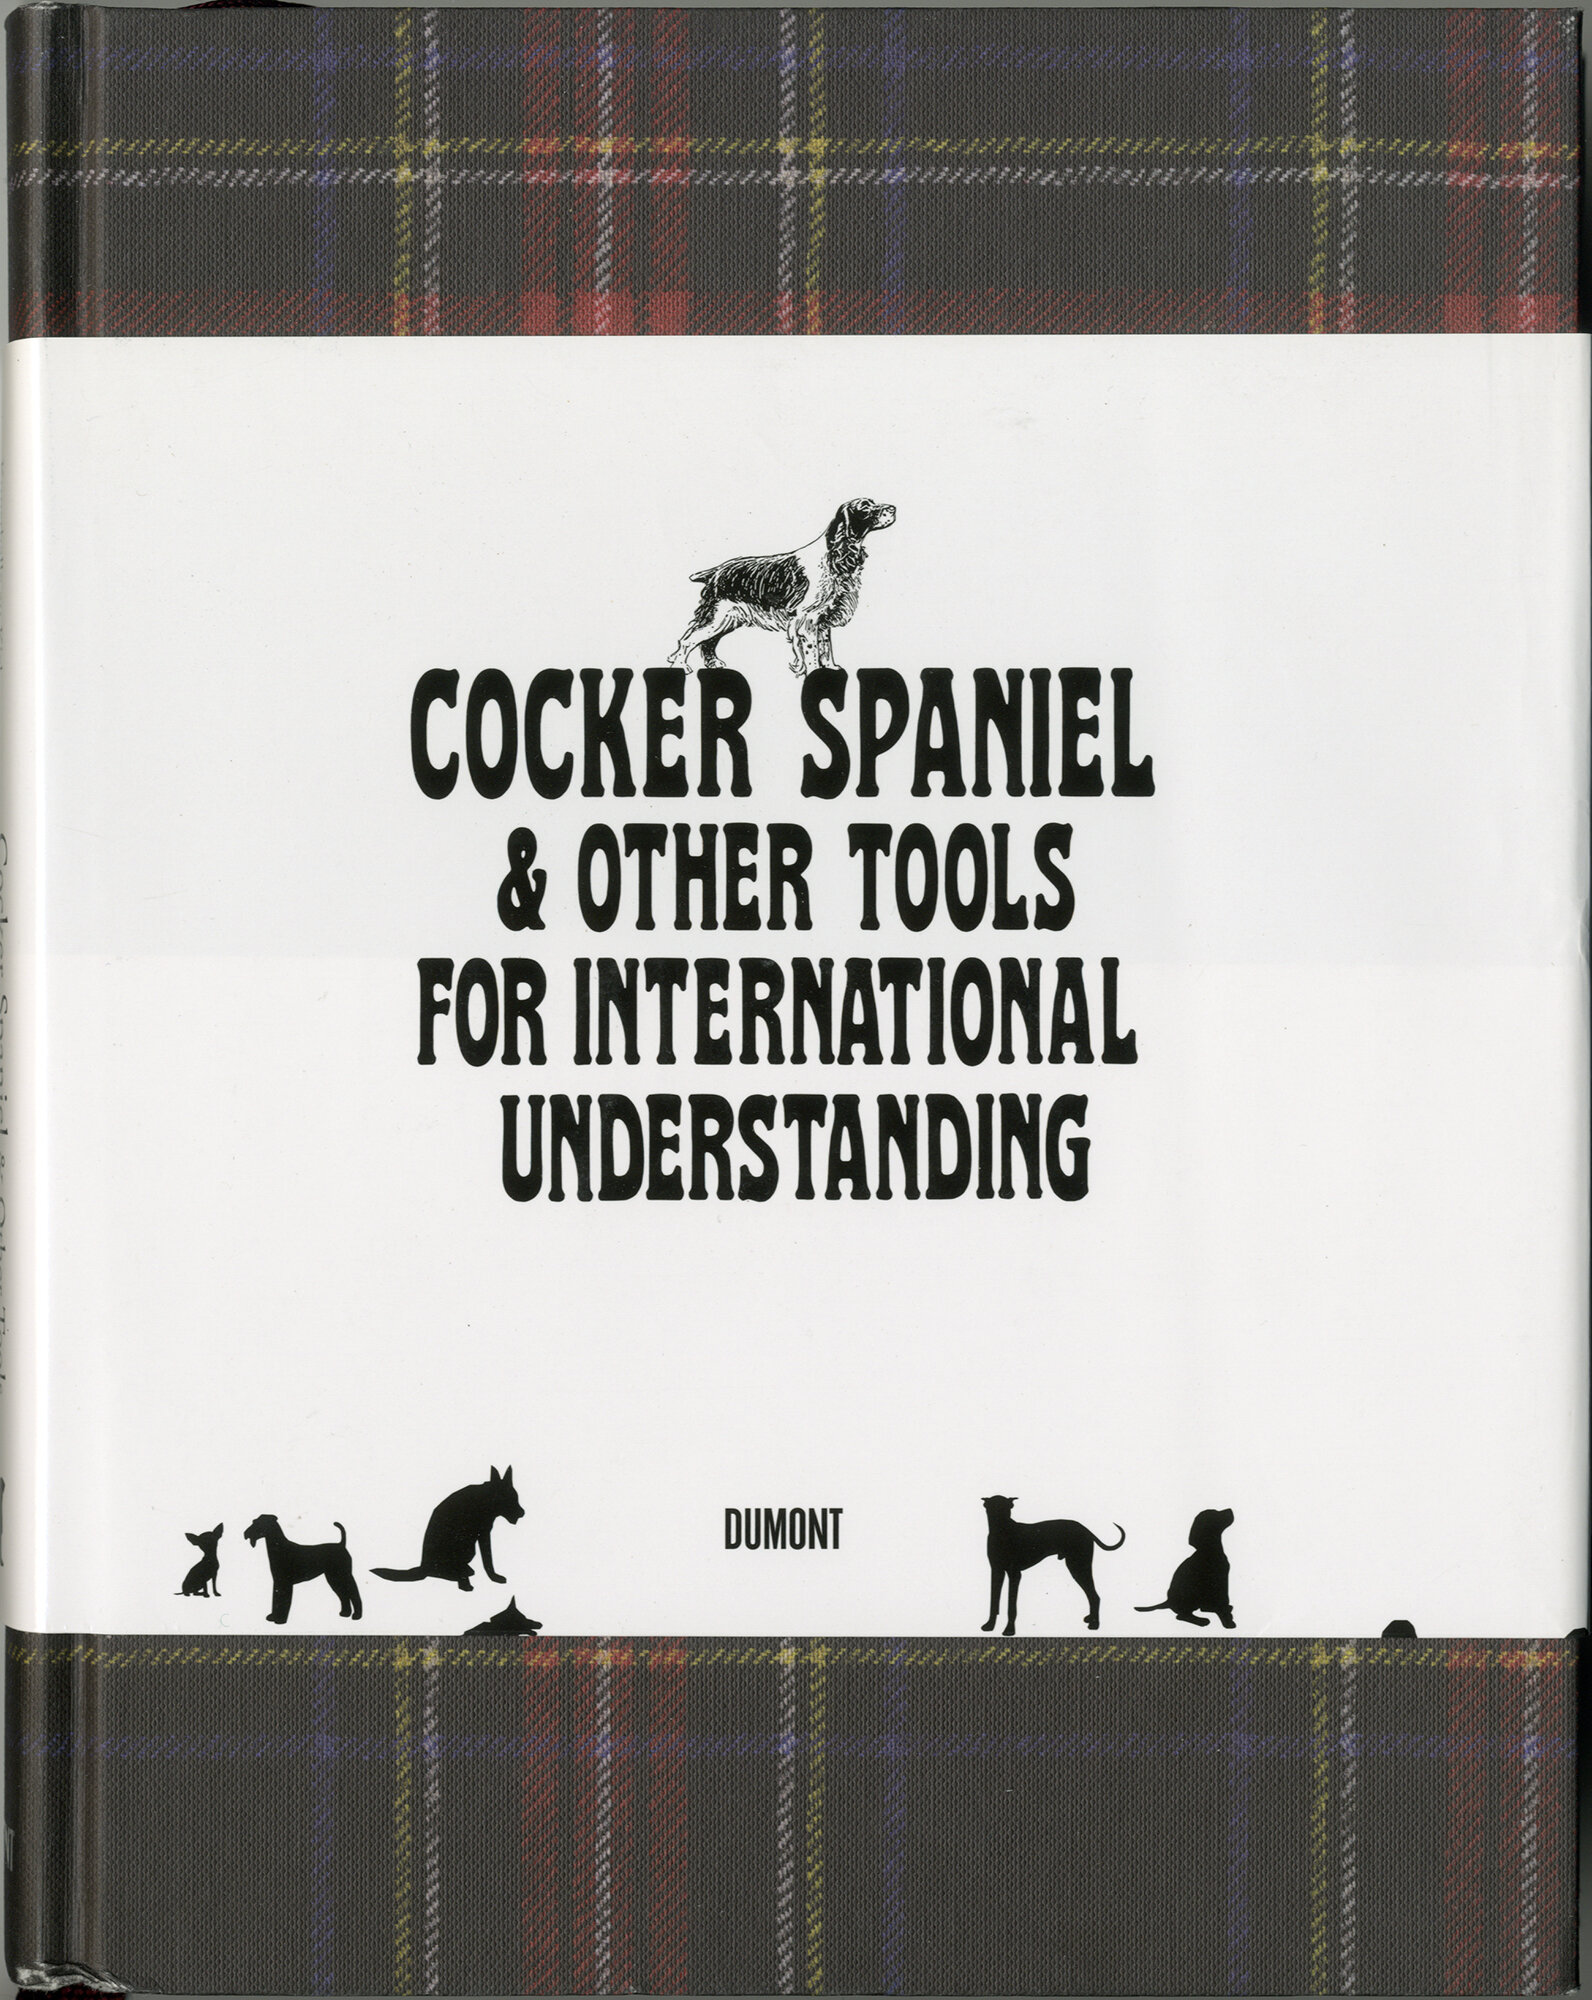 Cocker Spaniel cover01.jpg